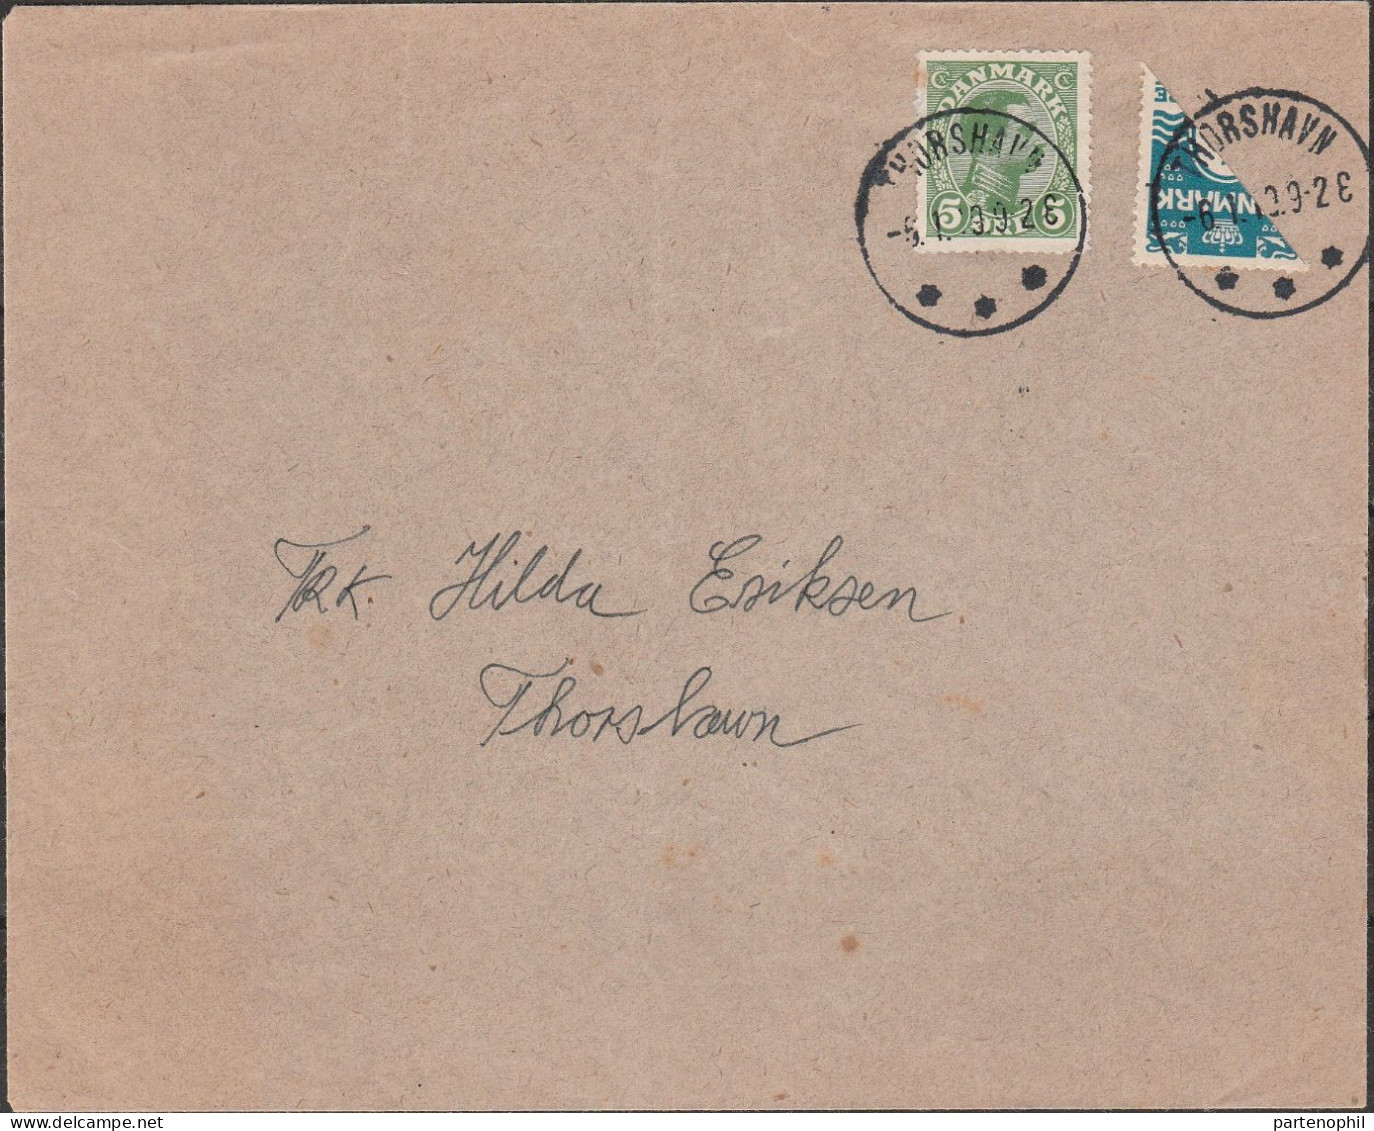 461 - Denmark Faroe Islands - 1919 - Lettera Affrancata Con Danimarca Frazionato Per La Metà 4 ö Azzurro N. 51 + 5 ö Ver - Briefe U. Dokumente